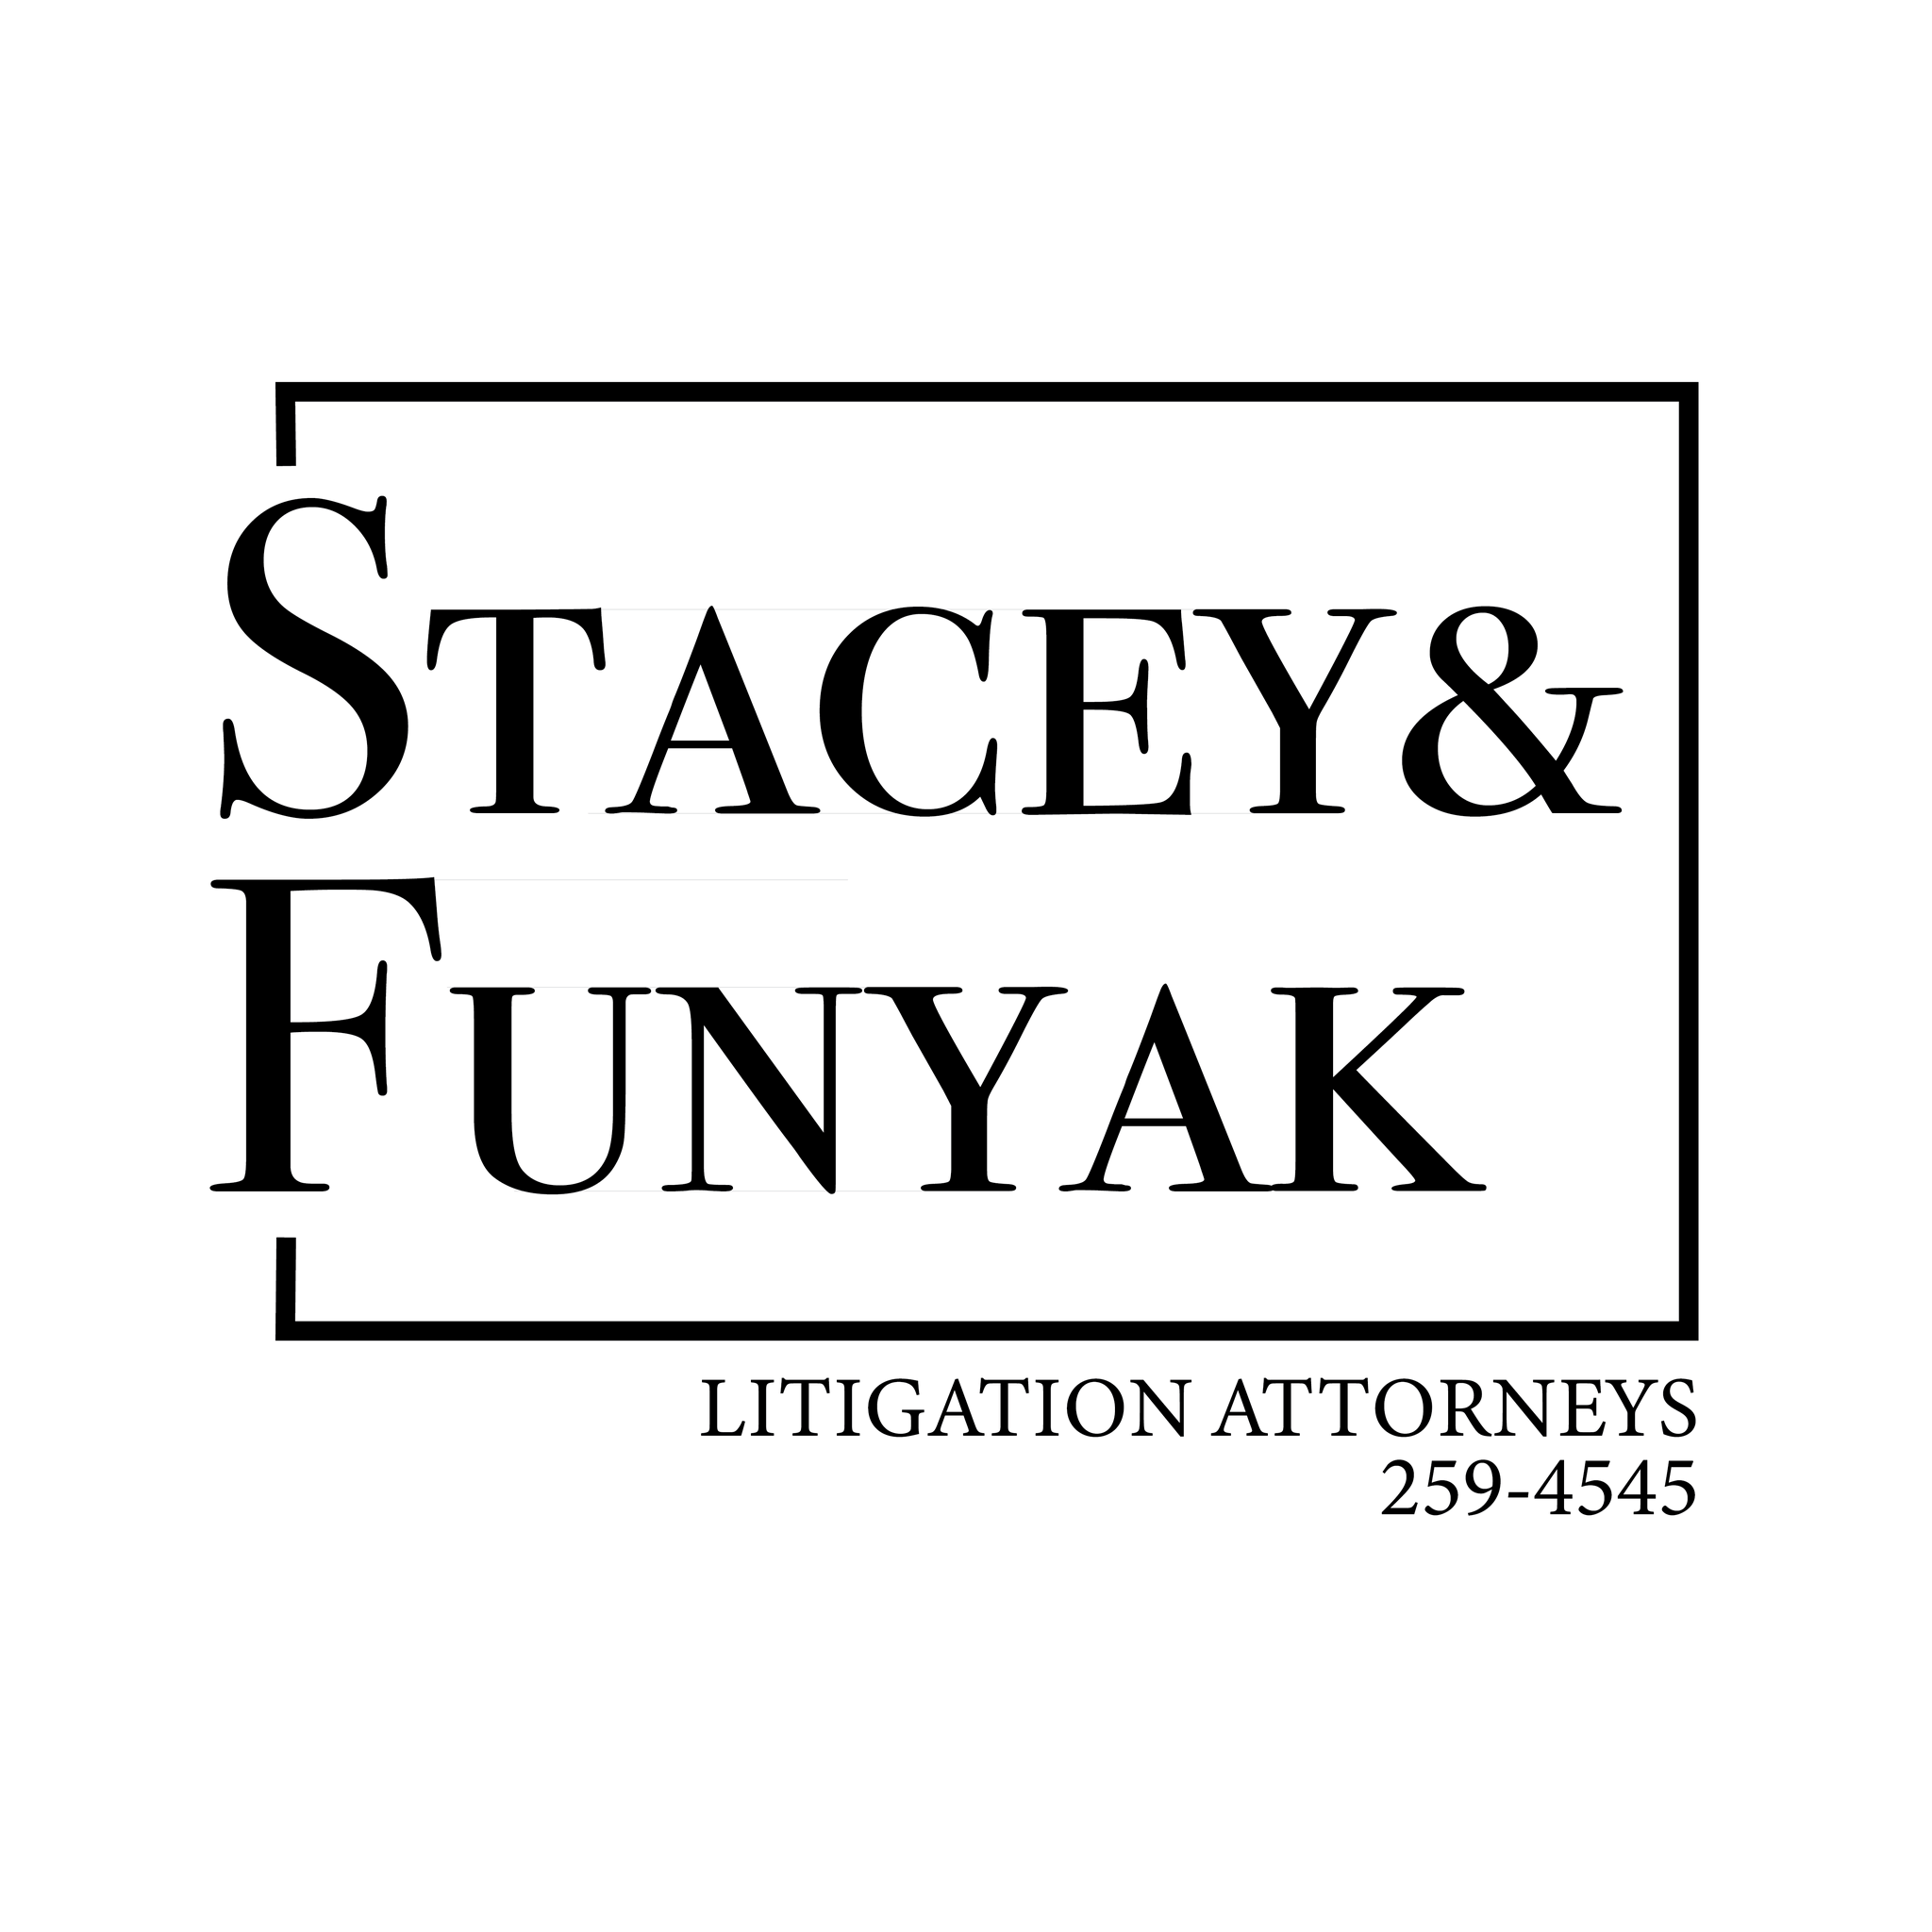 I. Stacey y Funyak (Presentación)